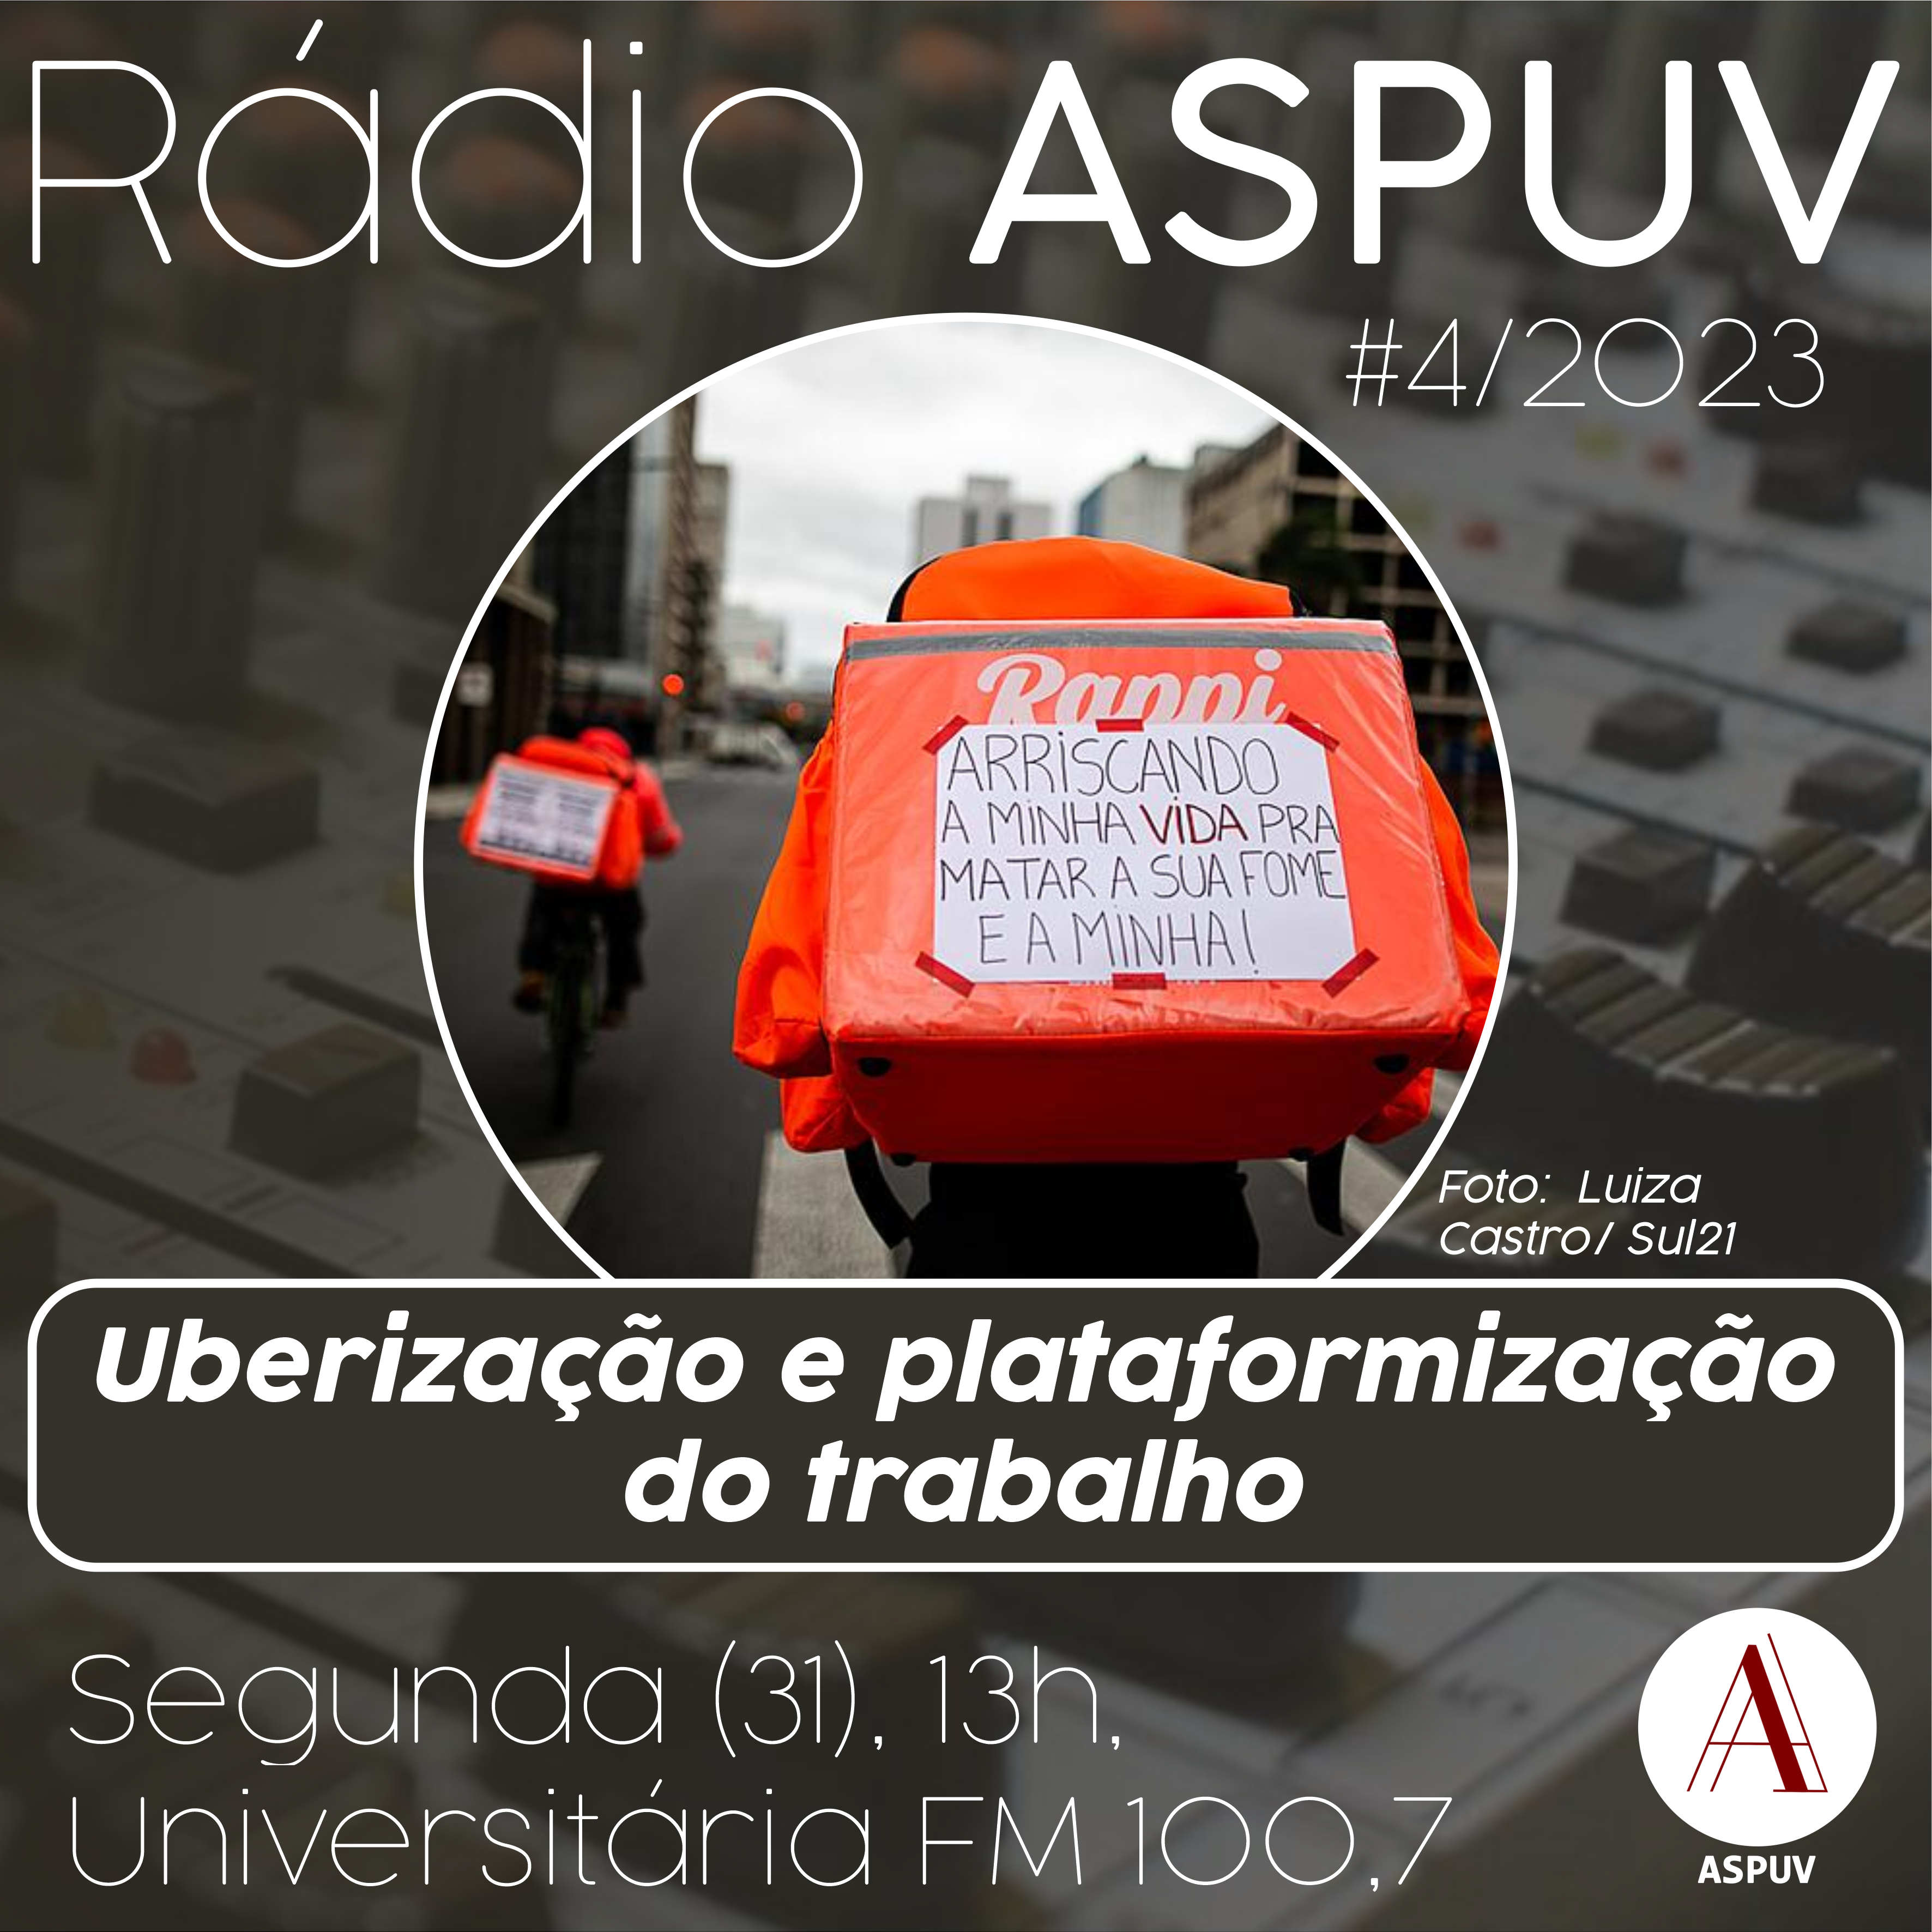 Rádio ASPUV #4/2023 – Uberização e plataformização do trabalho